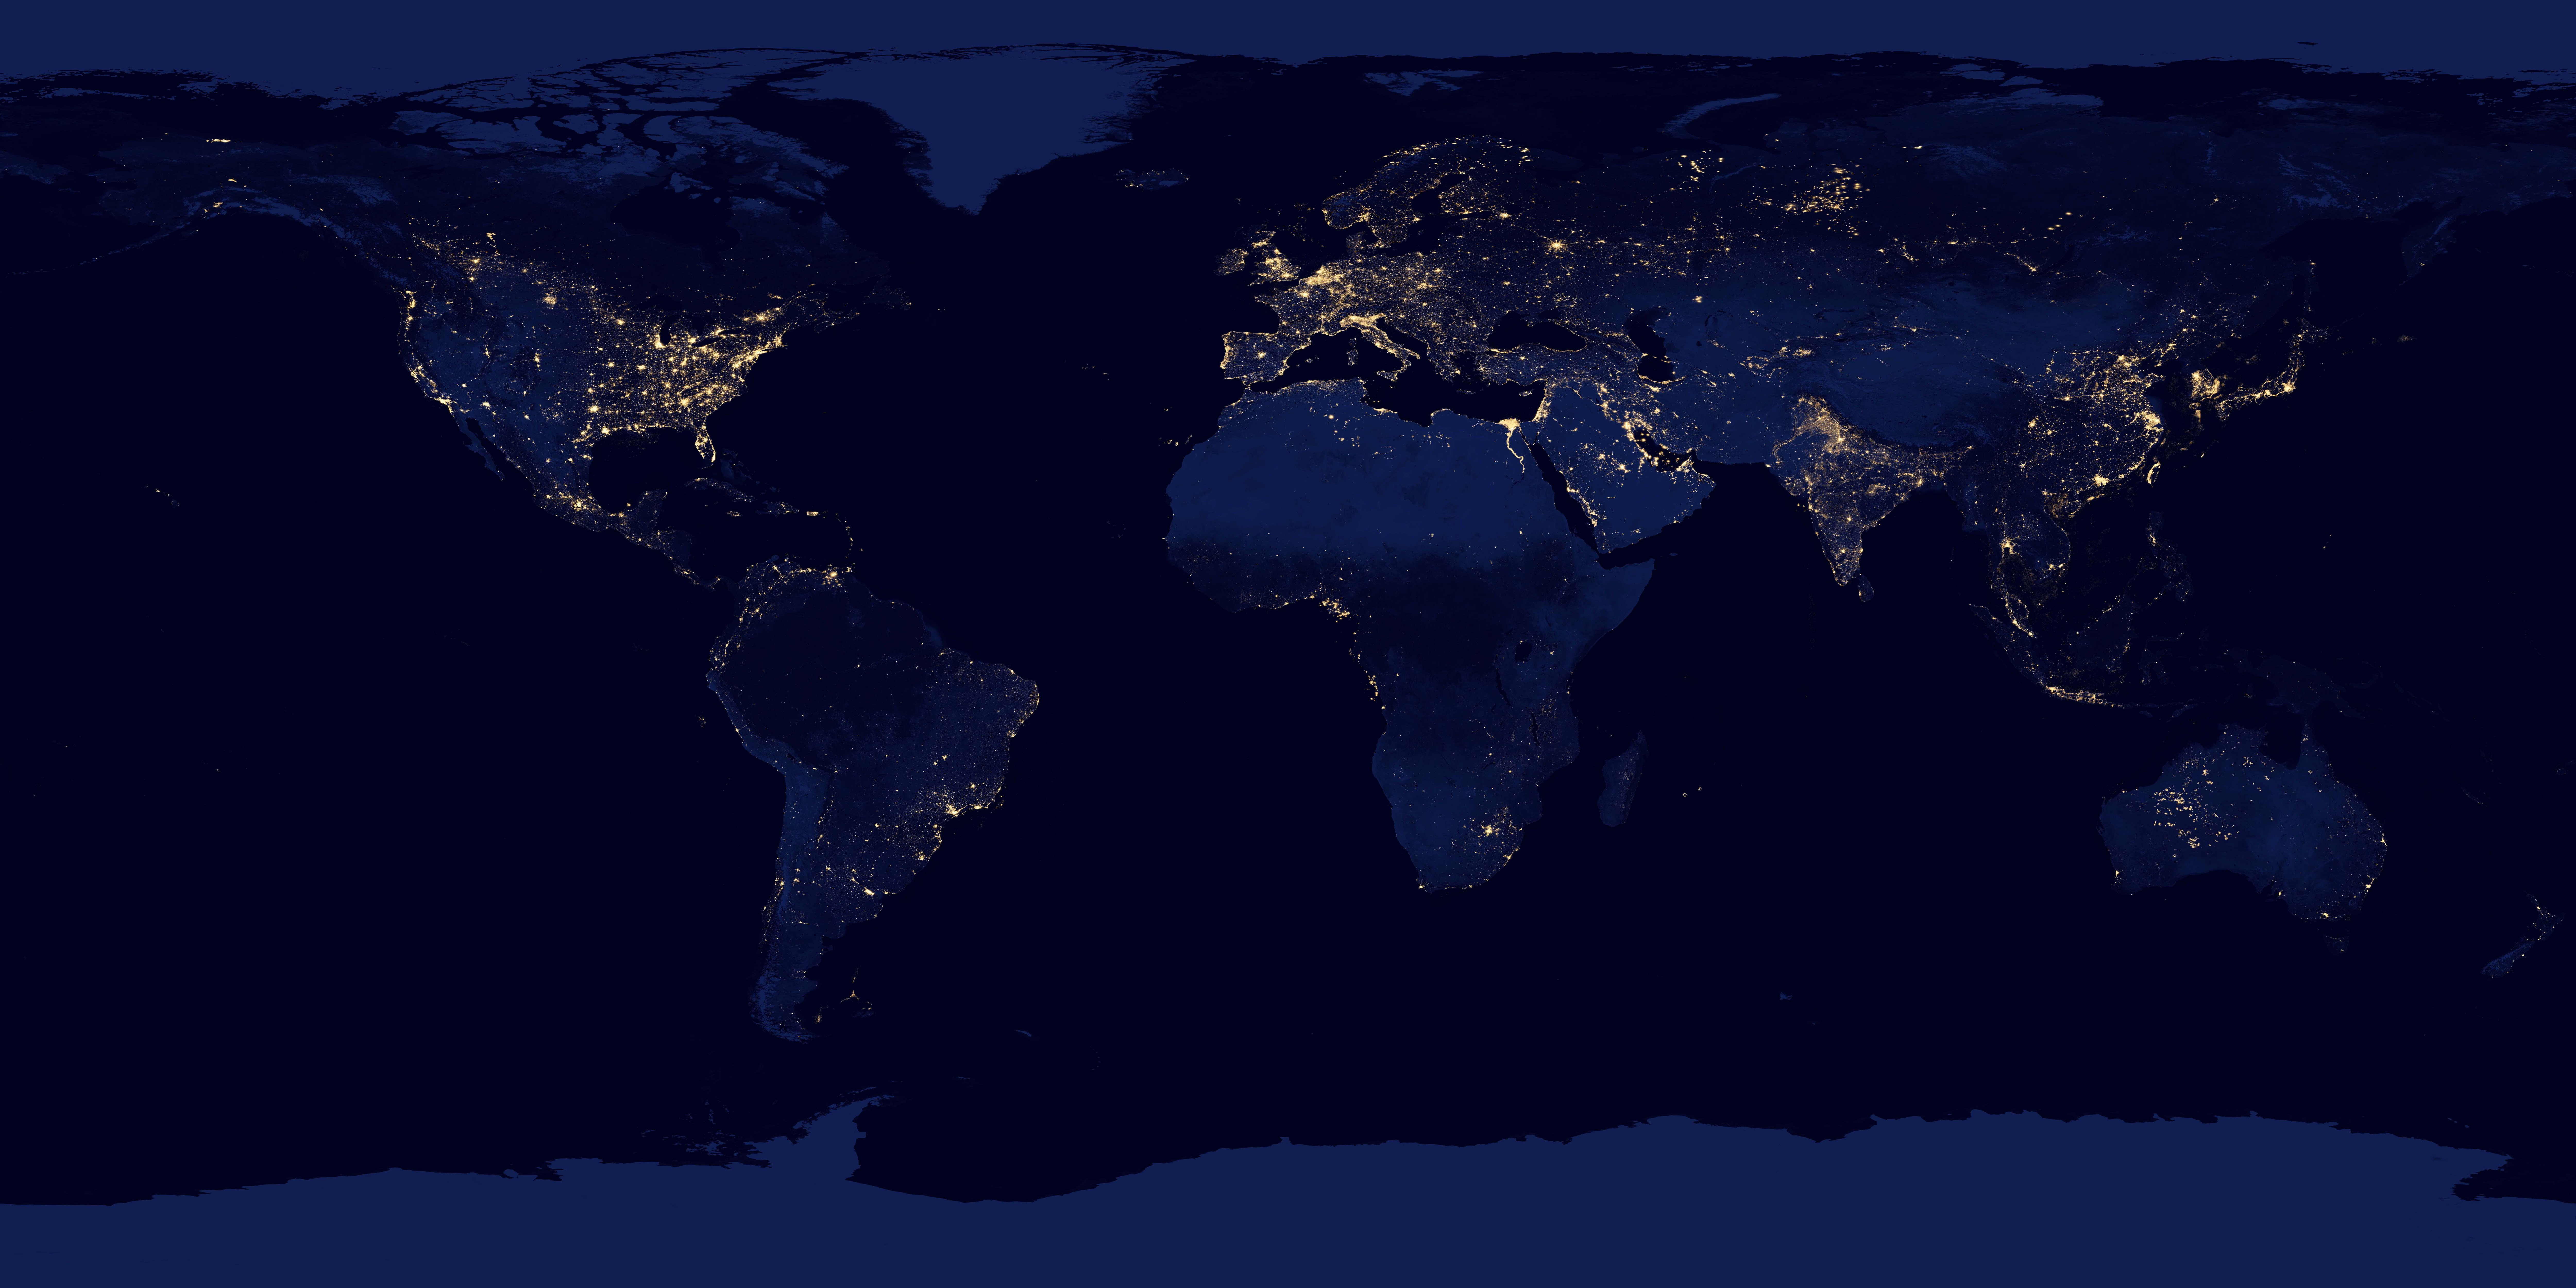 这张全球夜景卫星图是真的么